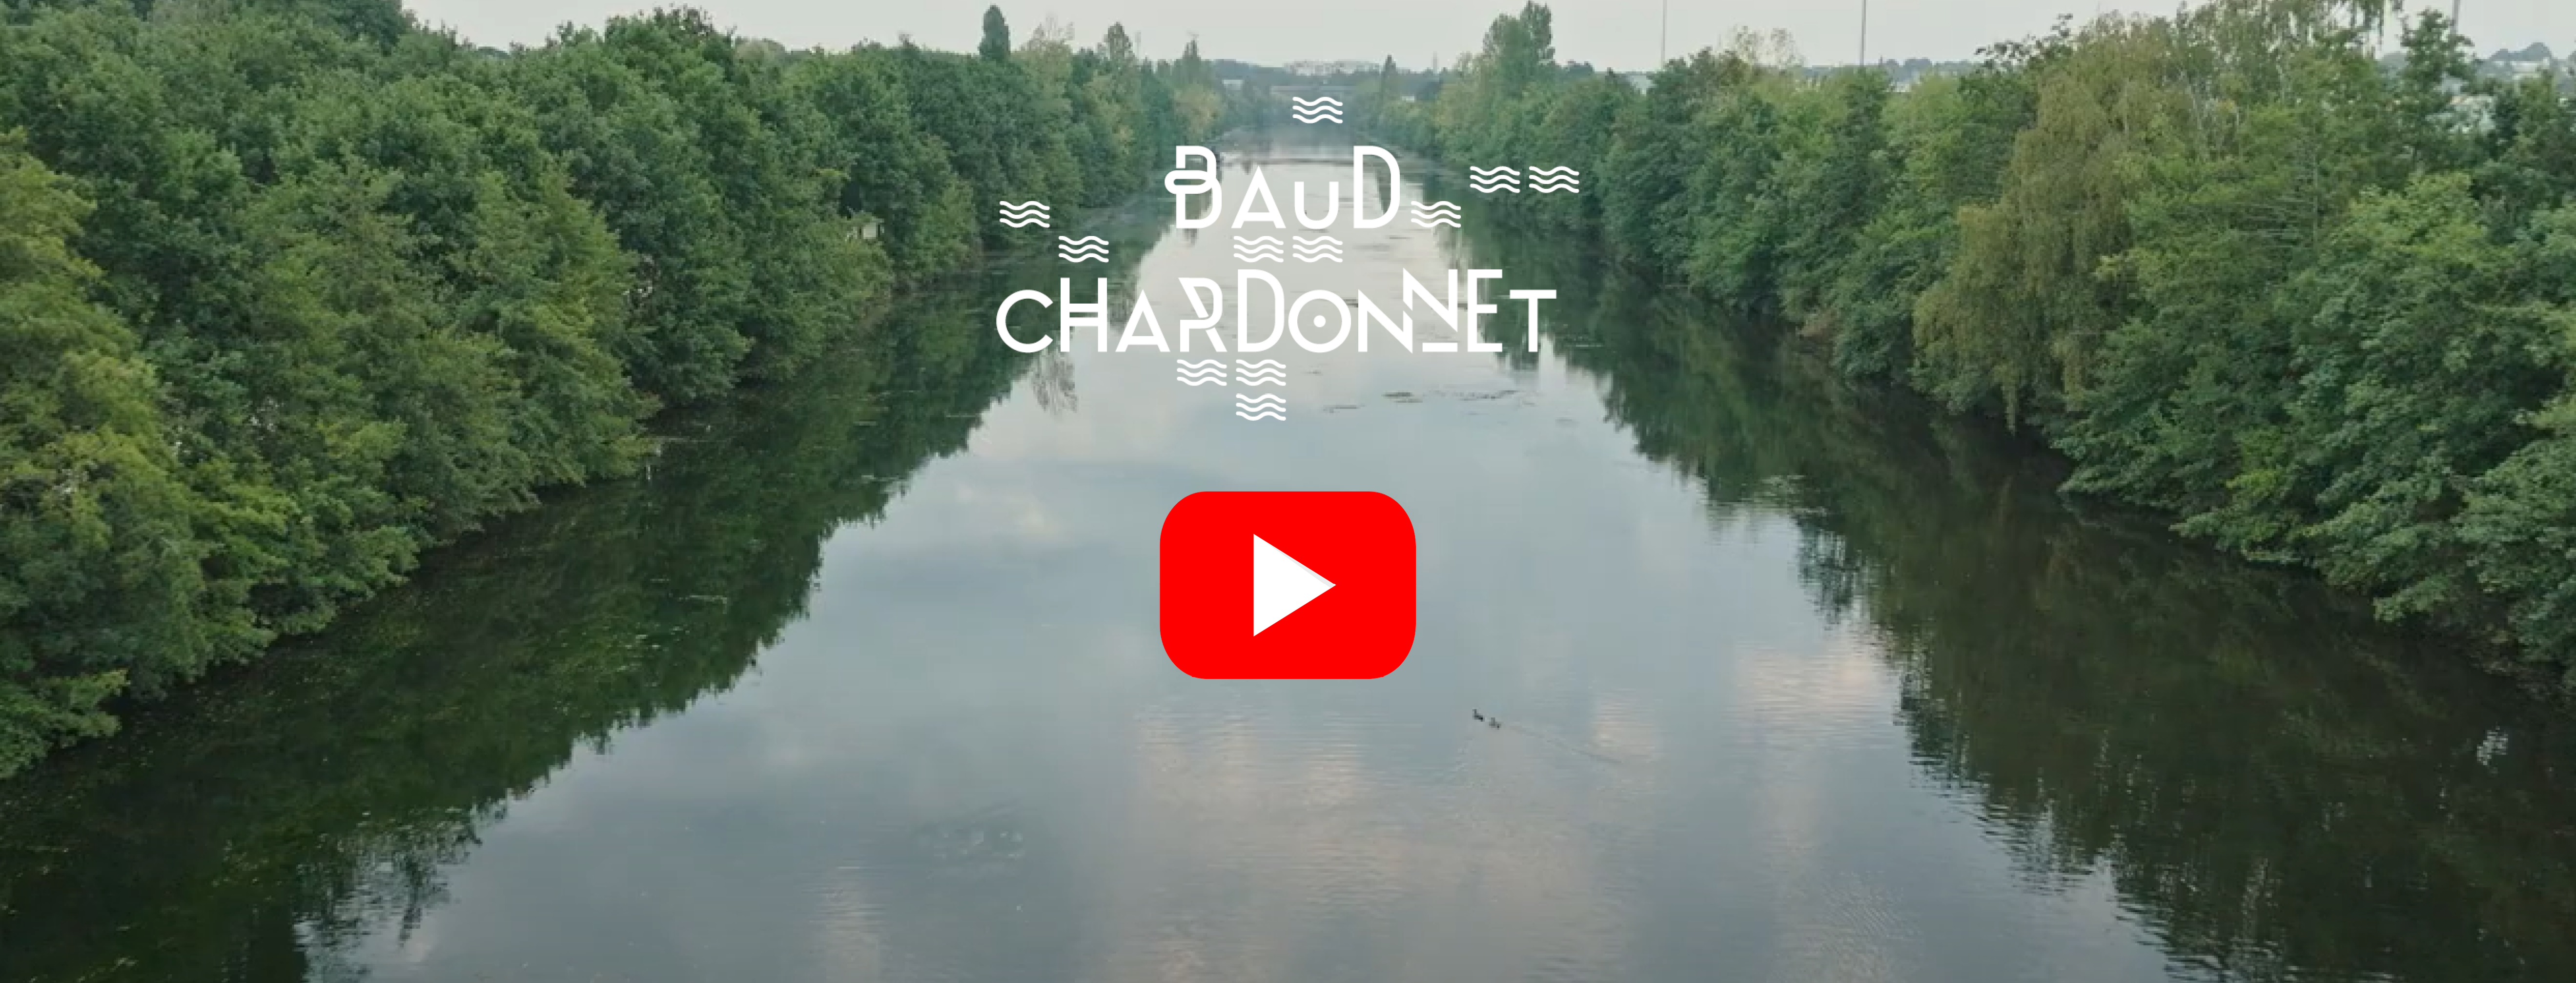 Baud-Chardonnet : bienvenue à bord du quartier rennais !